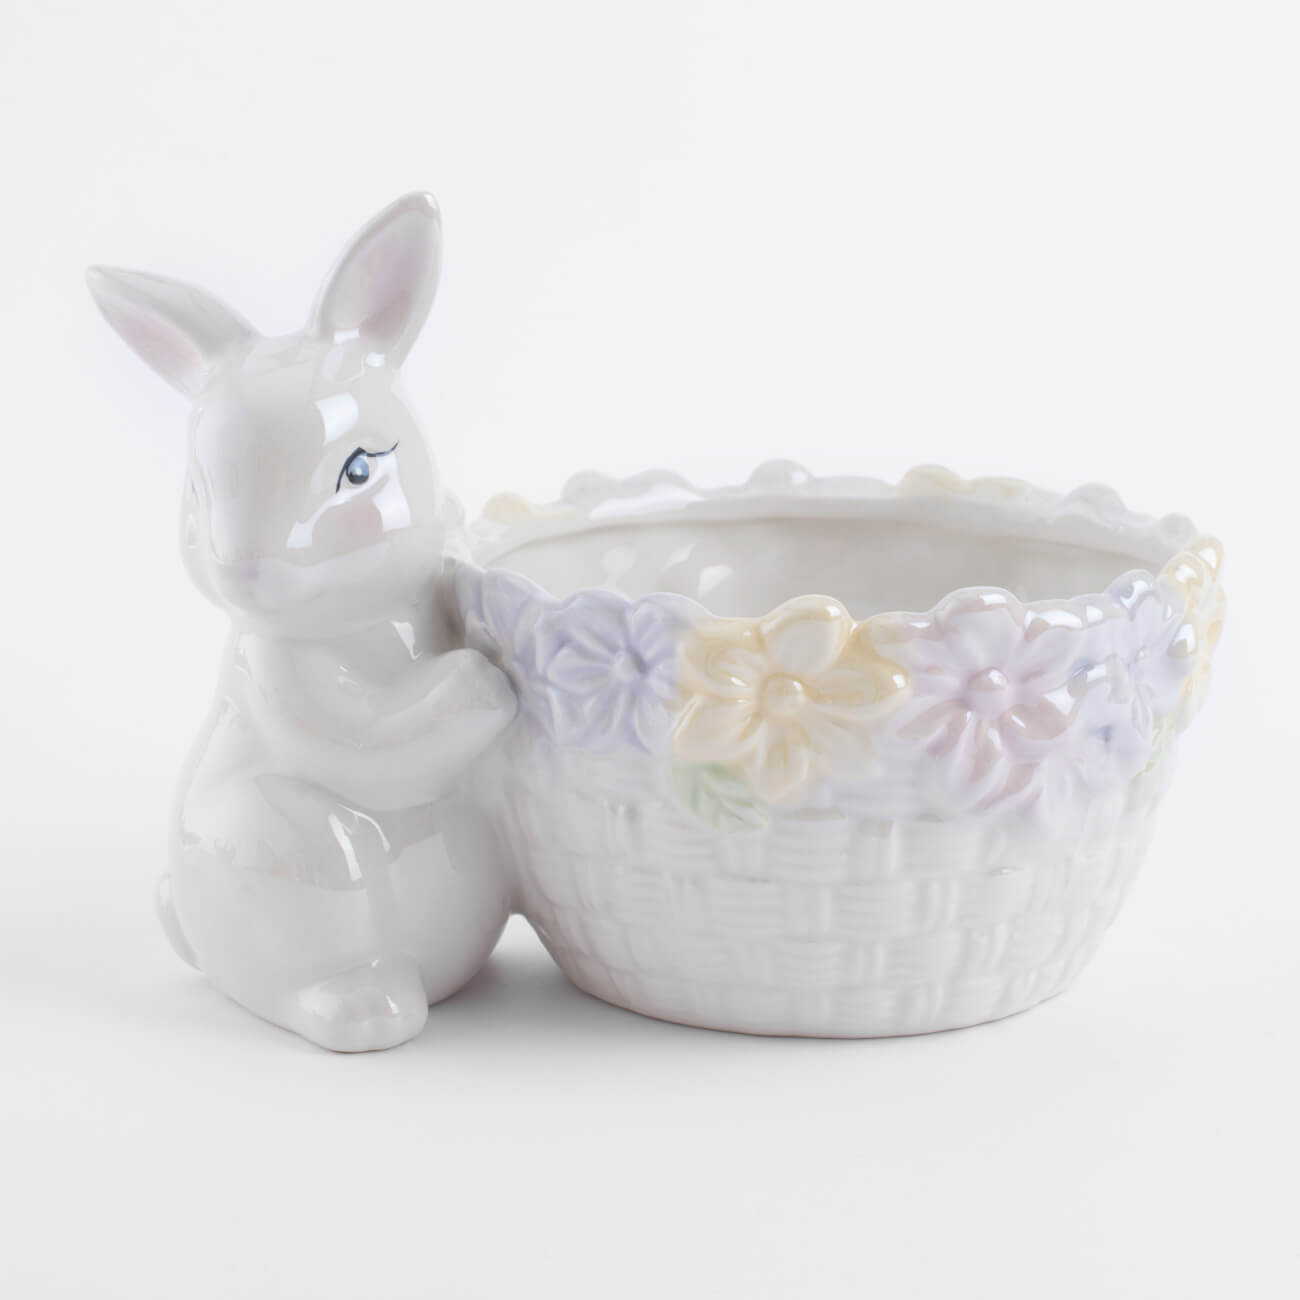 конфетница 30х12 см с ручками керамика белая перламутр два кролика в корзине easter Конфетница, 18x13 см, керамика, перламутр, Кролик с корзиной в цветах, Easter